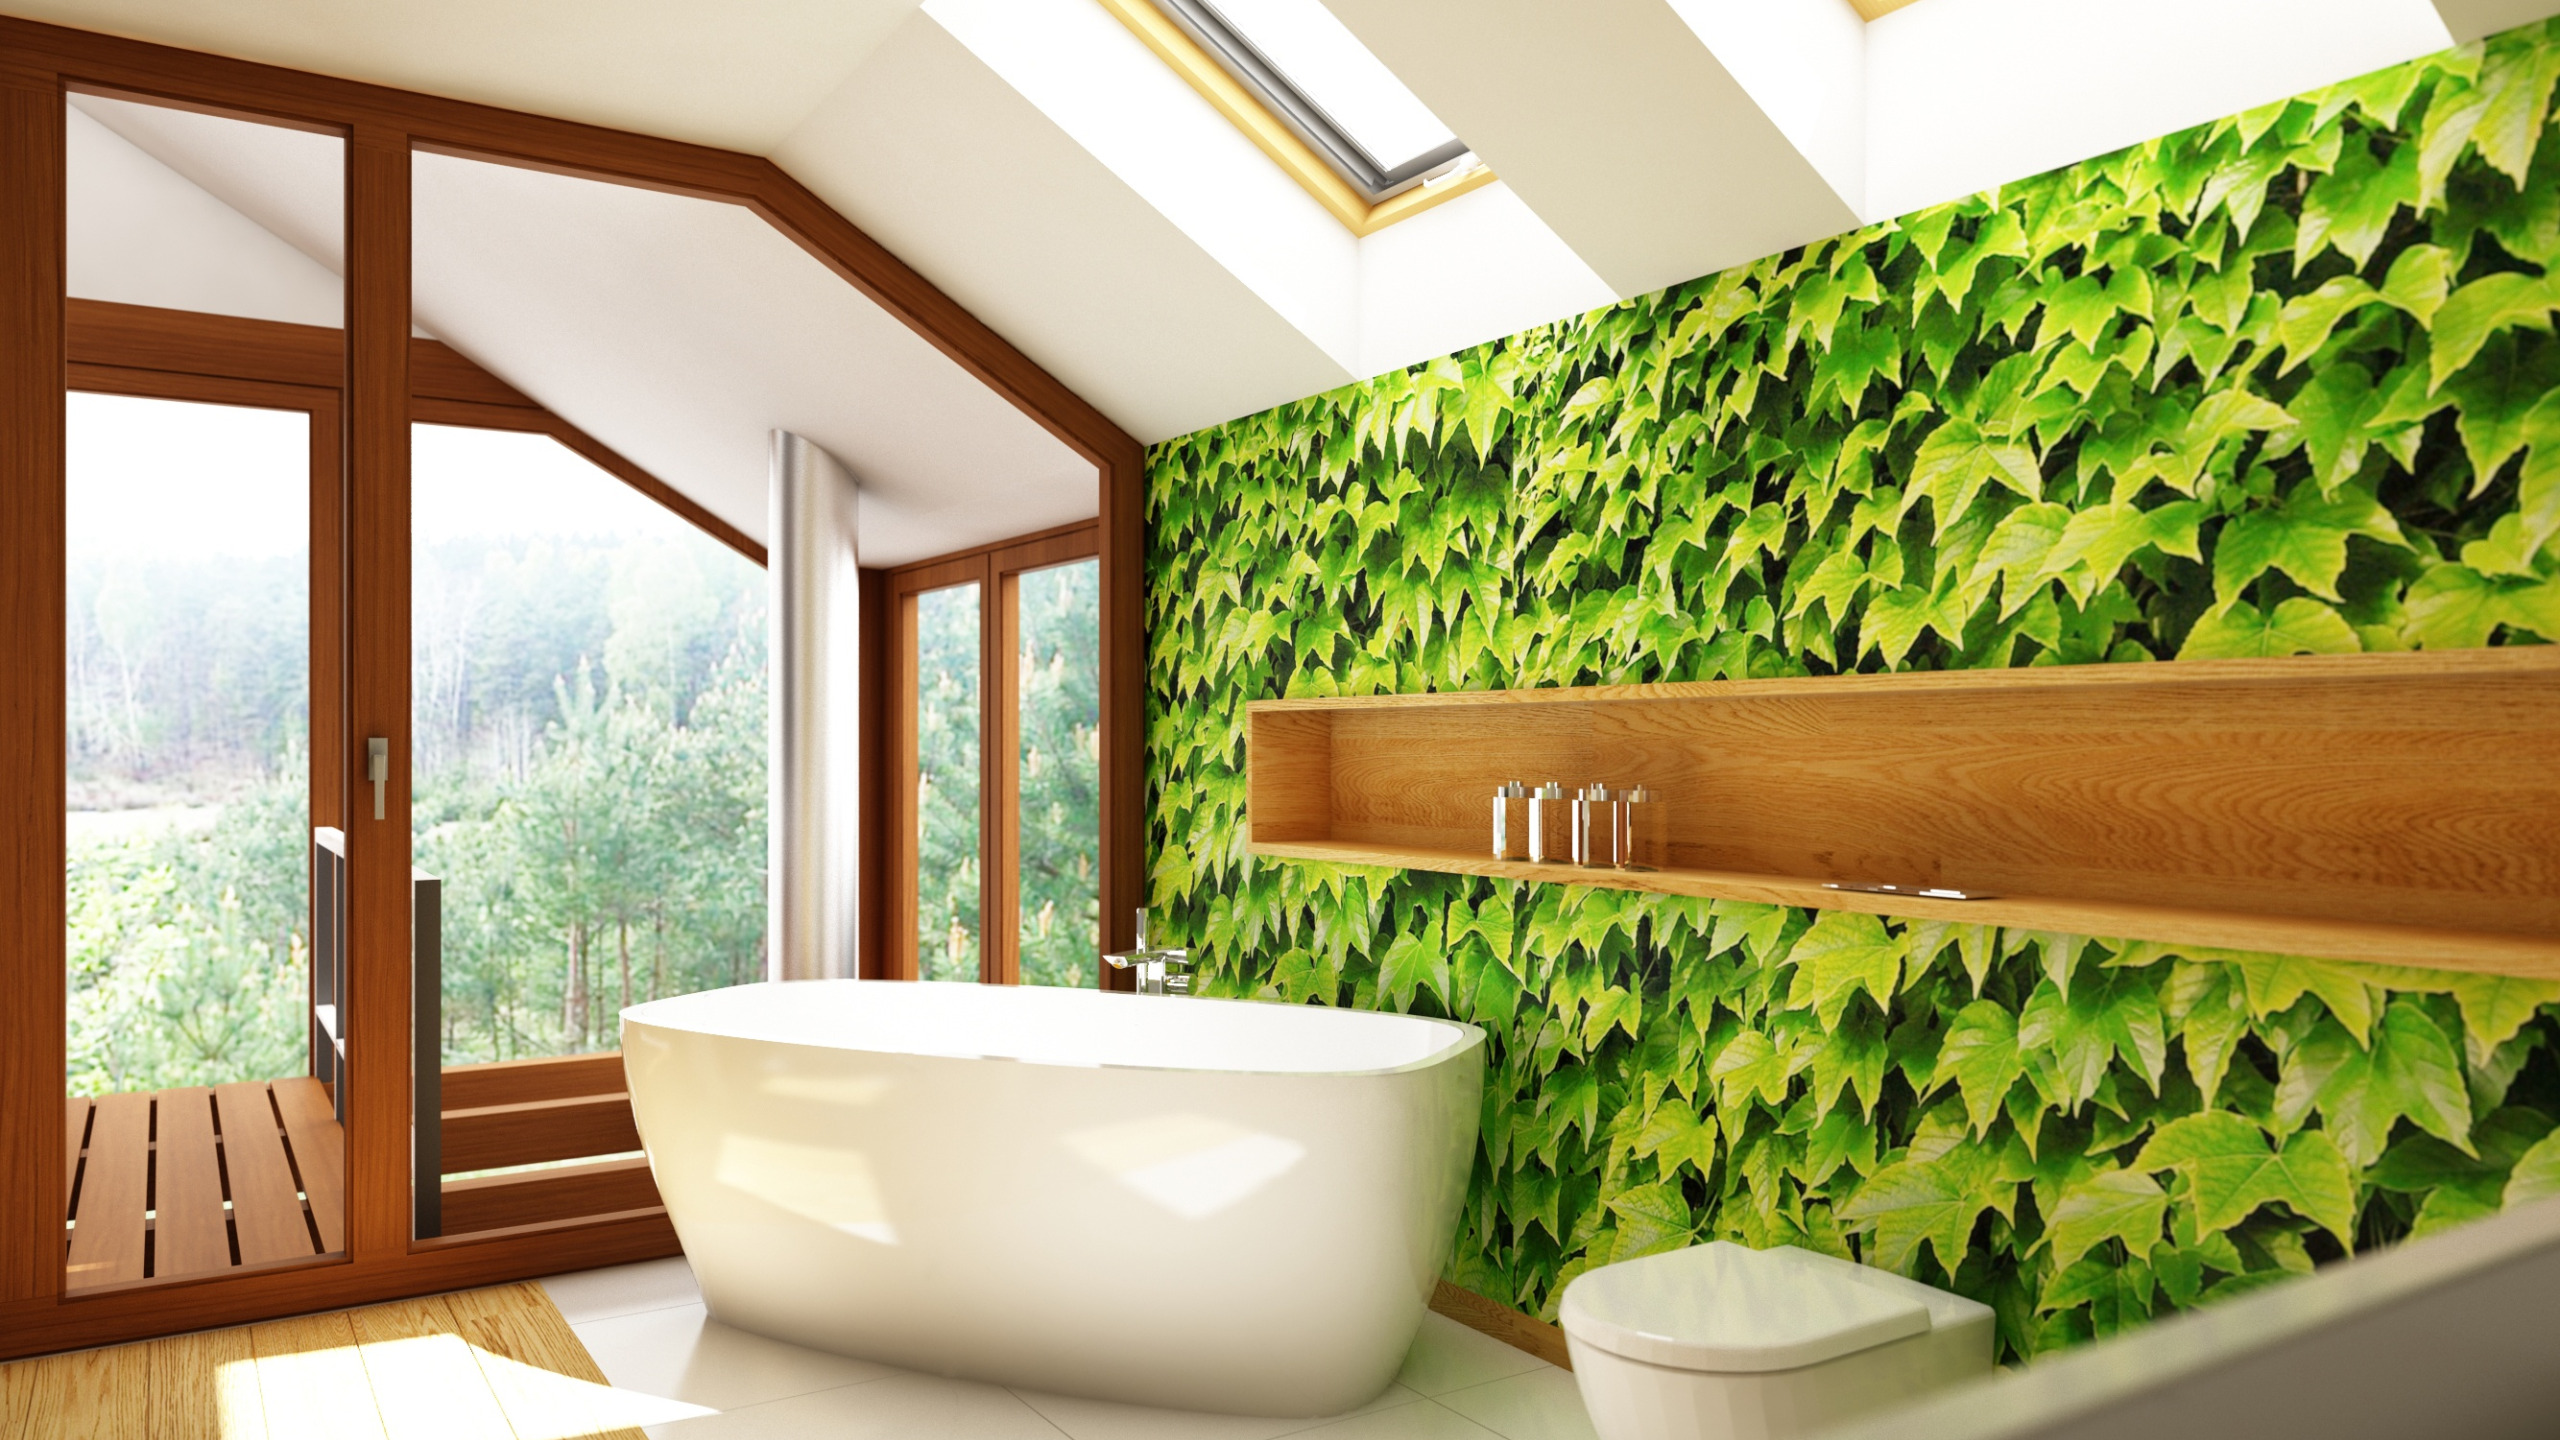 Влагостойкие стены купить. Интерьер ванной комнаты. Фотообои в ванной комнате. Ванная с зеленью. Фотообои для ванной комнаты влагостойкие.